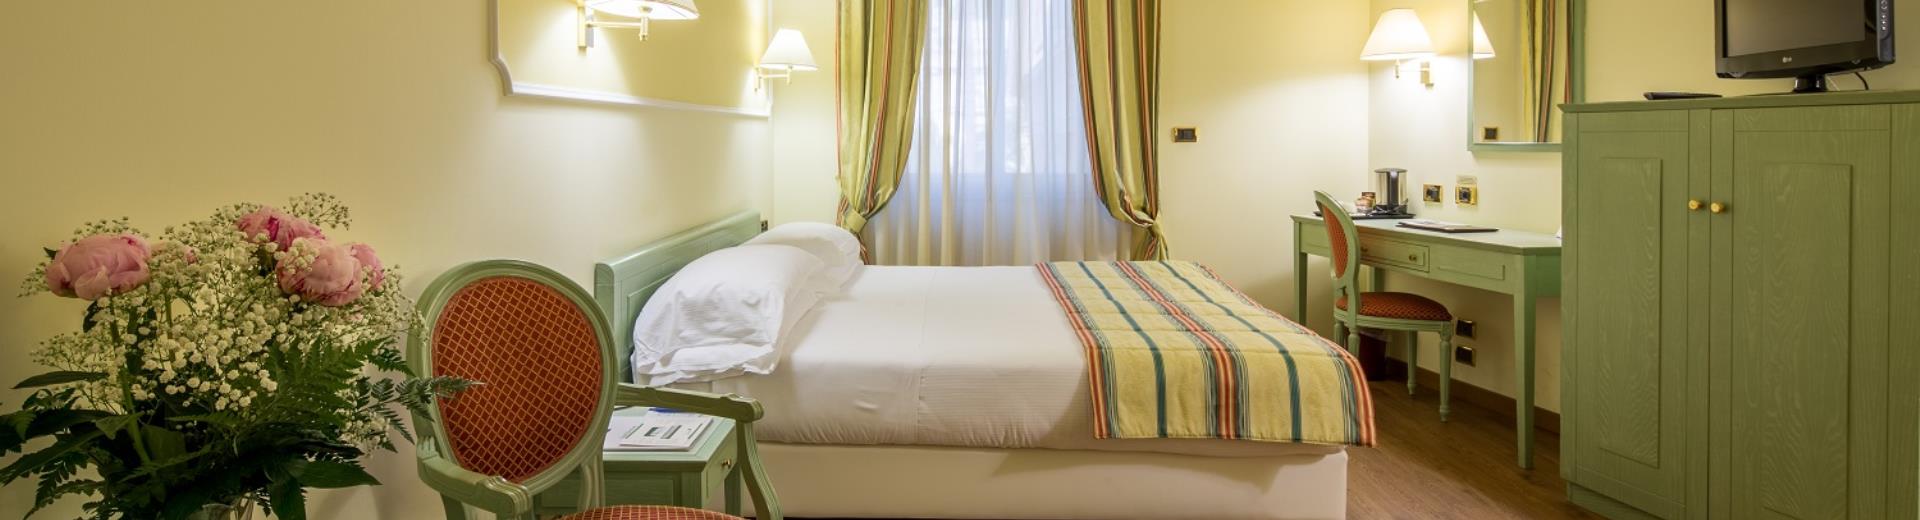 Улучшенный отель Nazionale Сан-Ремо